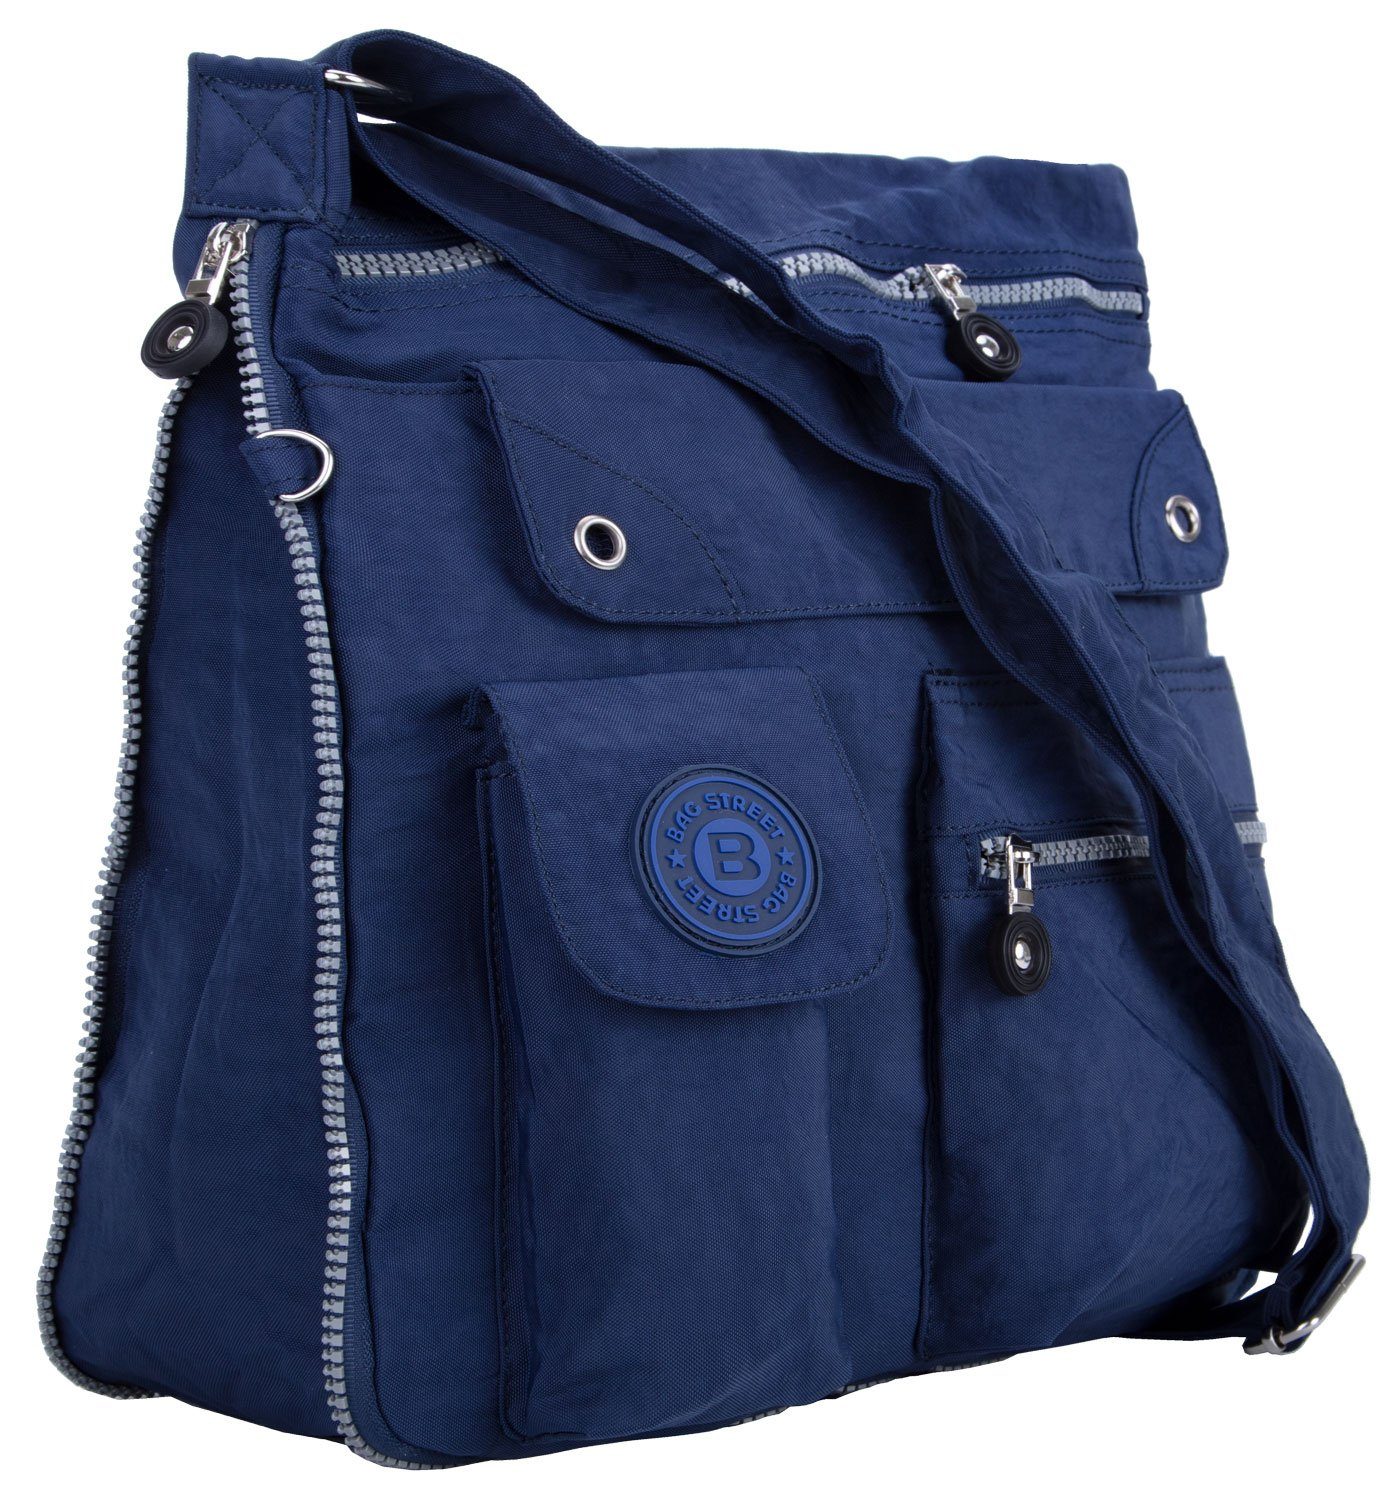 Bag City-Tasche compagno Sportive Urlaub mit Henkeltasche, Reise Umhänge-Tasche Stauraum blau Kuriertasche viel